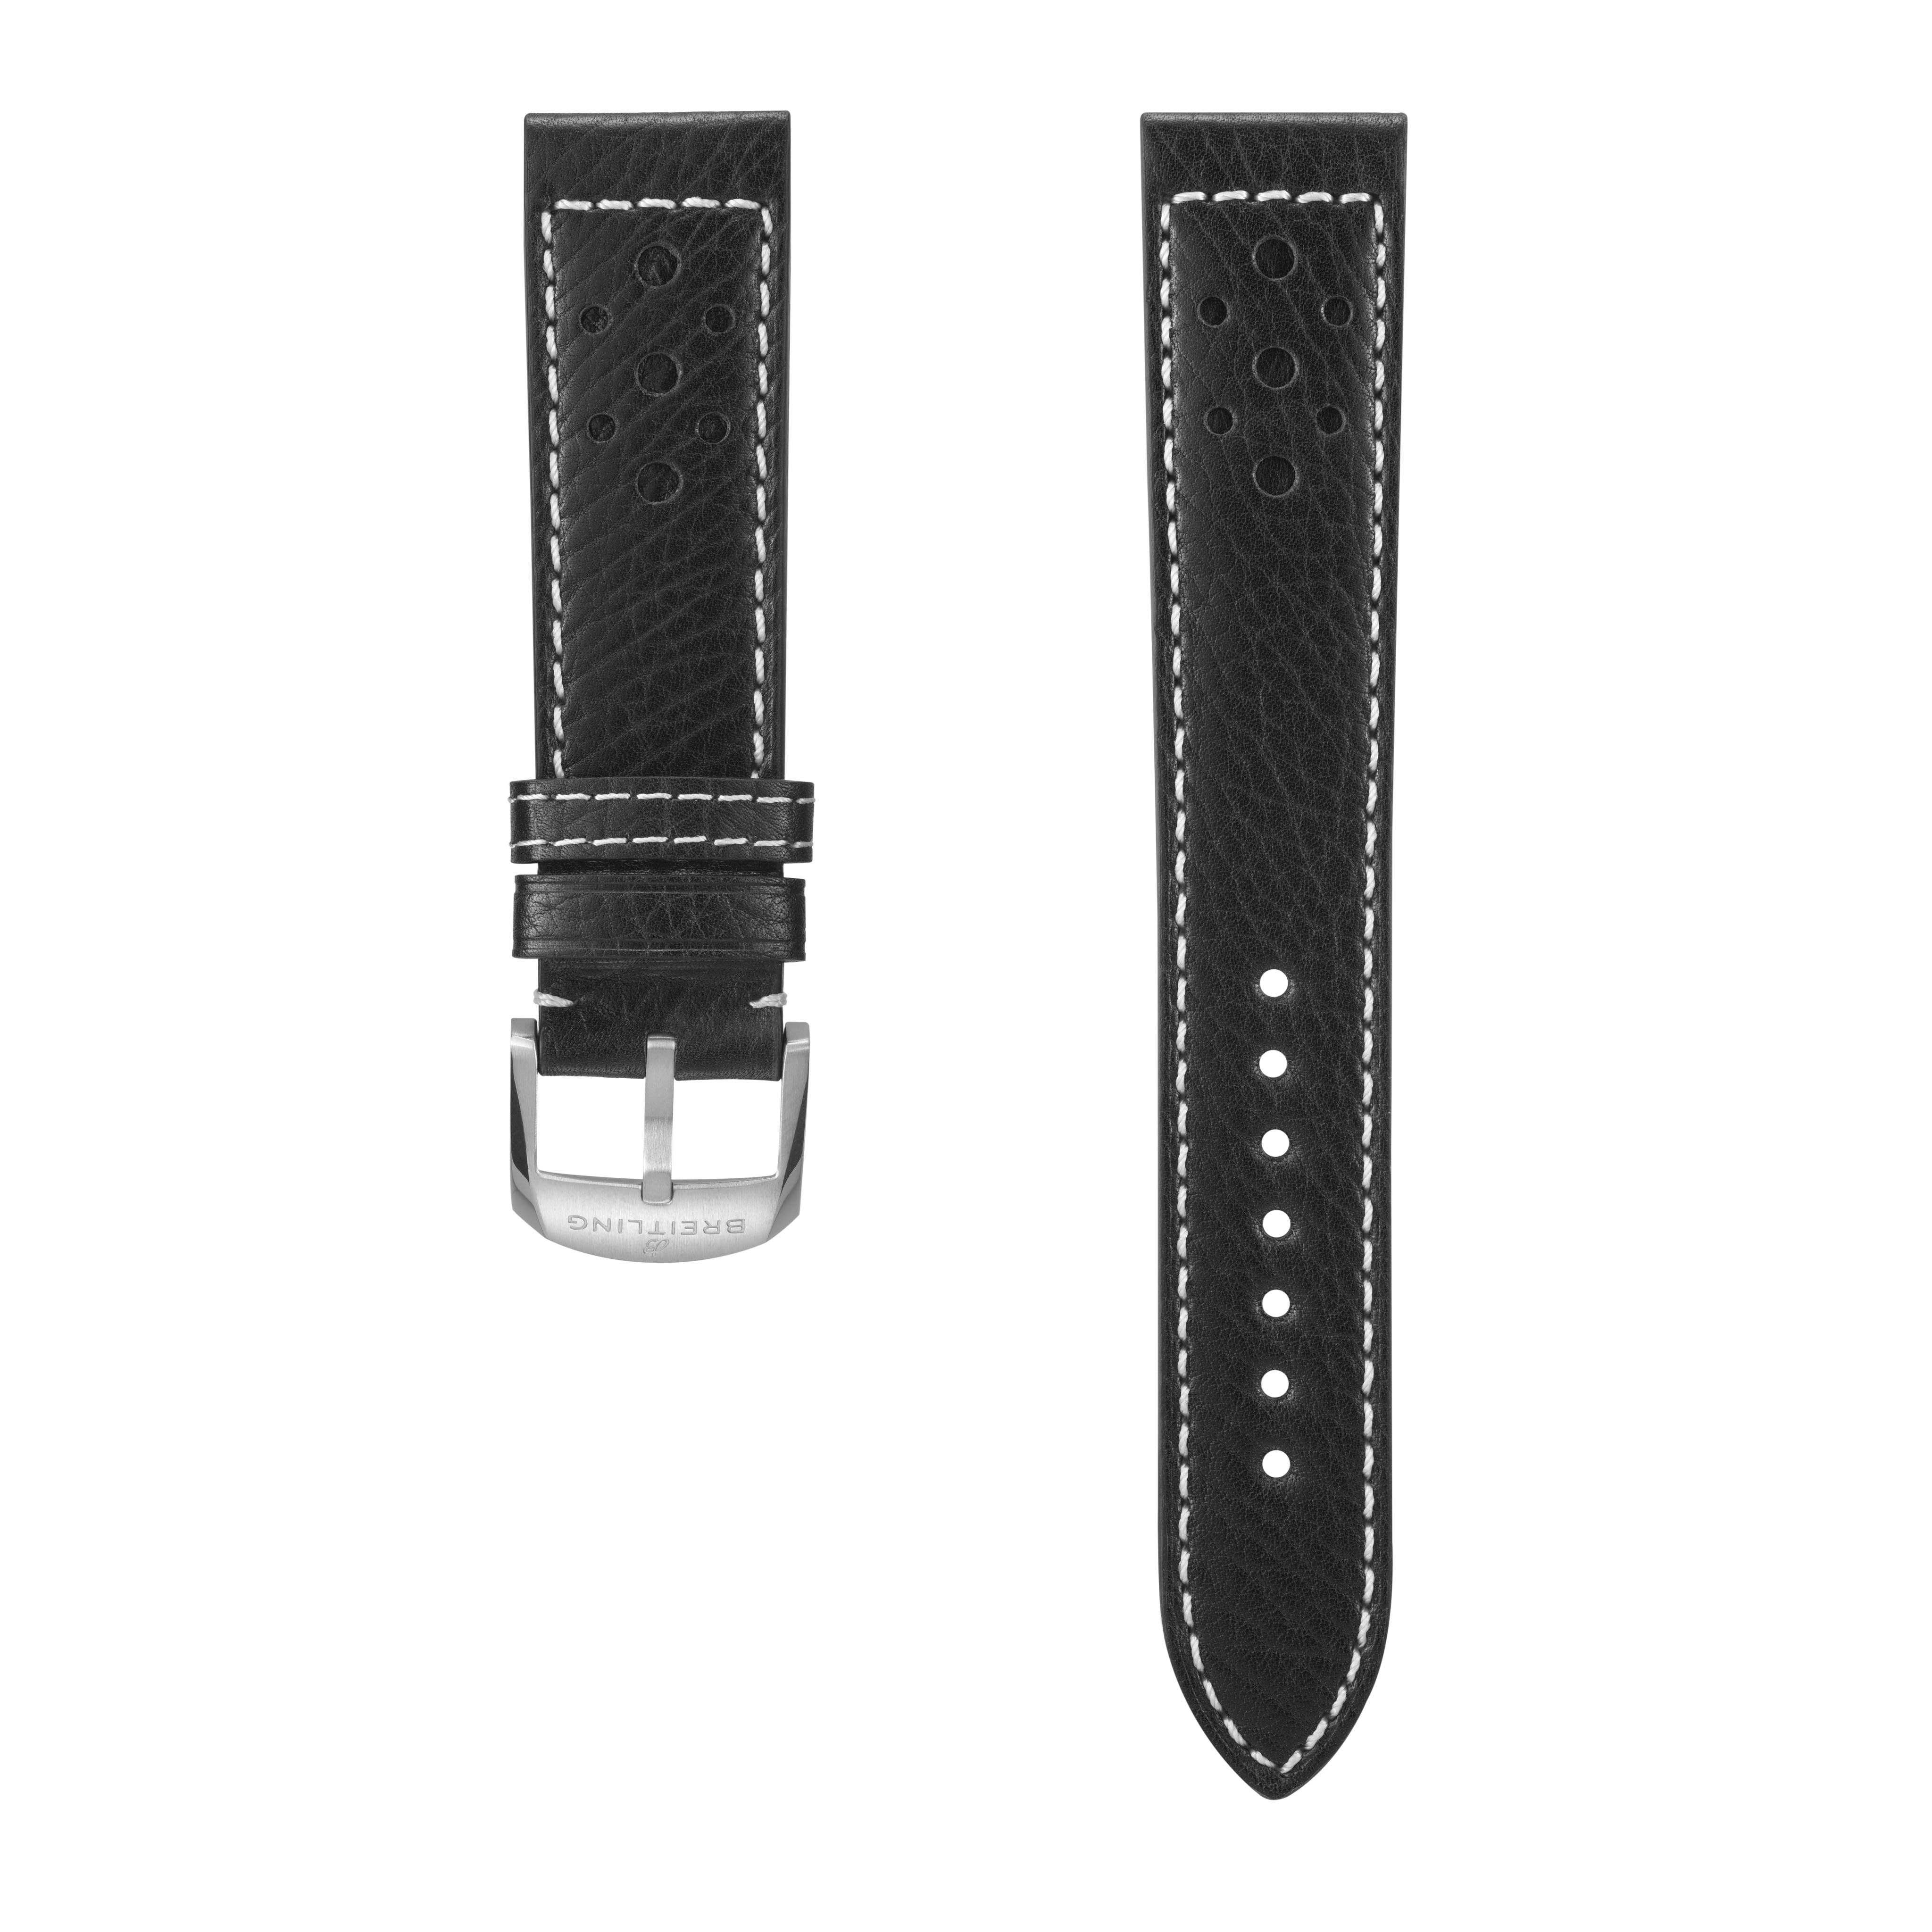 Bracelete em pele bovina preta, inspirada no mundo das corridas - 20 mm